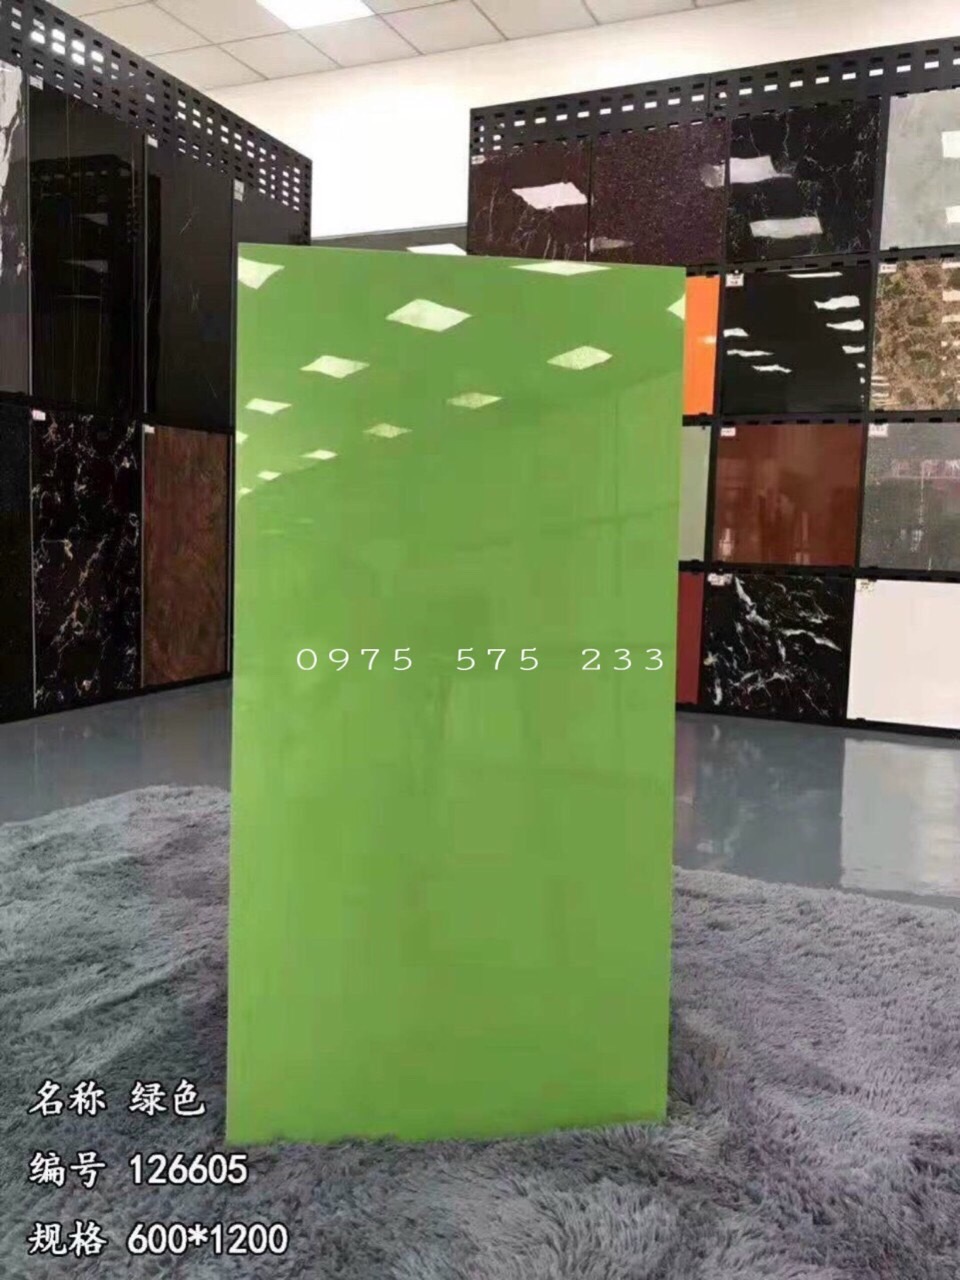 Gạch nhập khẩu 60x120 màu xanh lá siêu bóng kiếng cao cấp